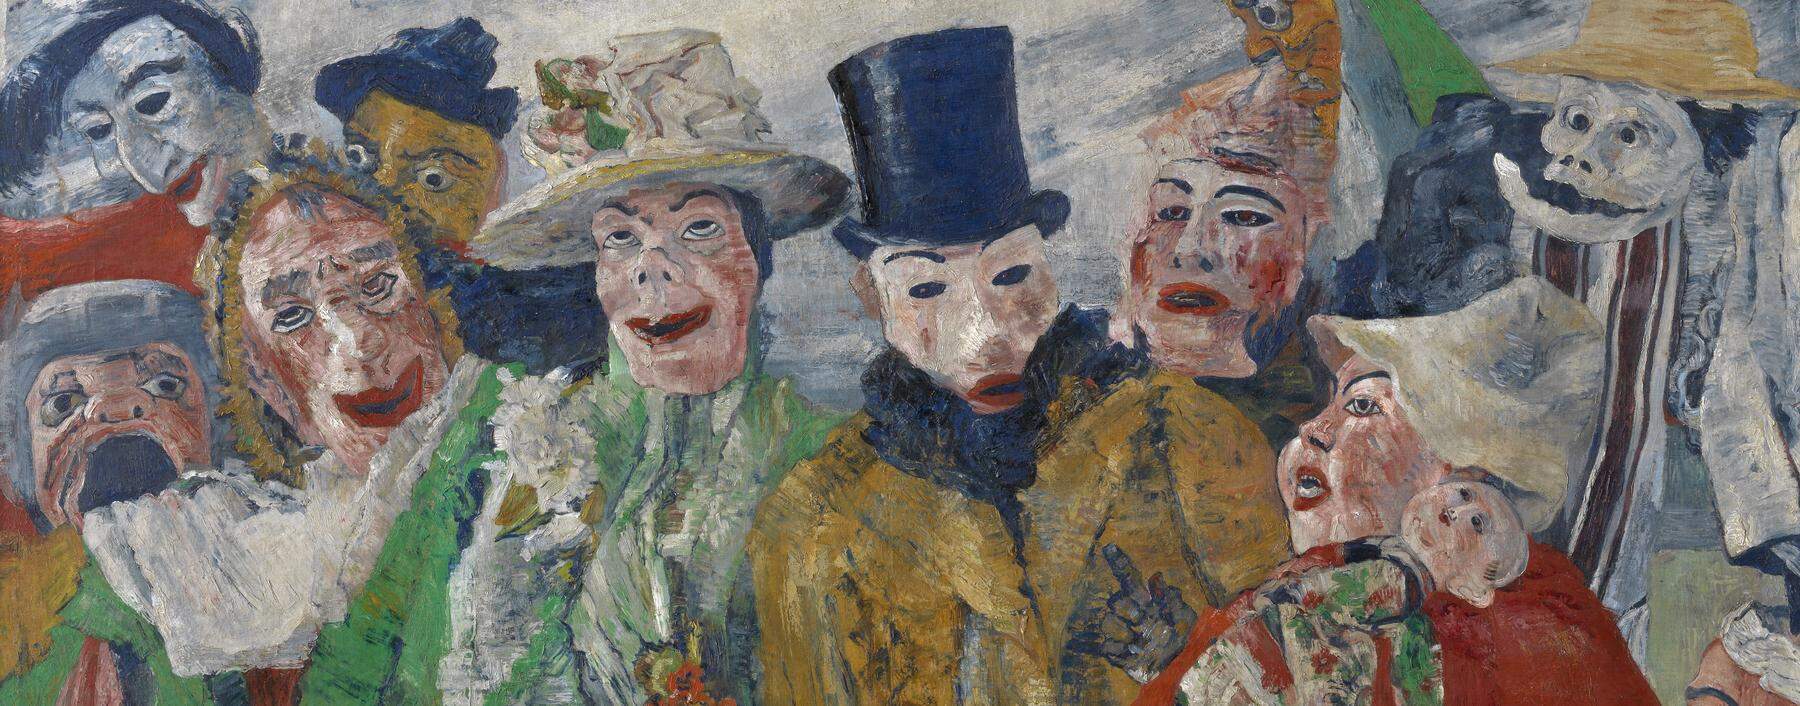 James Ensor dämonisierte die menschliche Psyche und Gesellschaft, vor allem mit seinen Maskenbildern. Hier in „Die Intrige“ (1890).